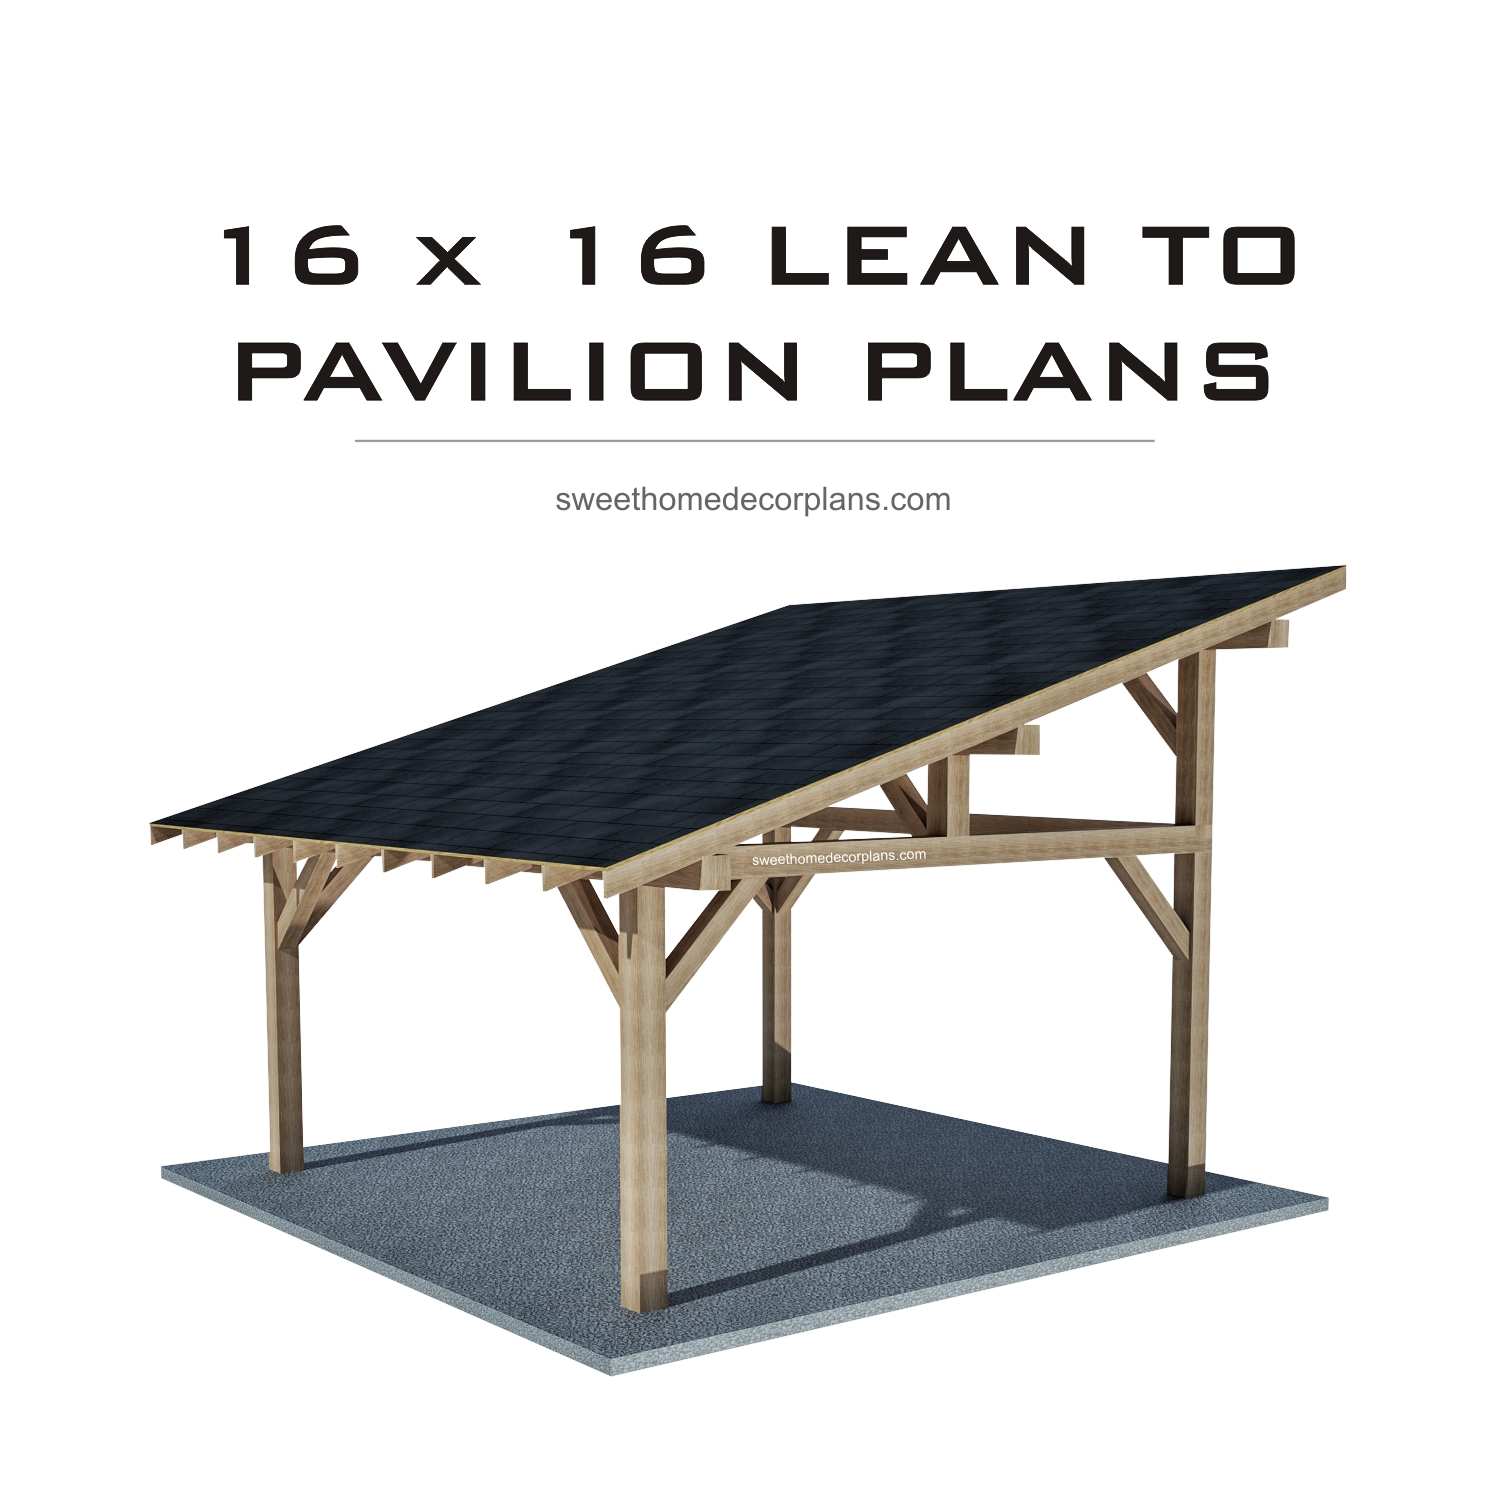 Diy-16-x-16-lean-to-pavilion-plans-gazebo-plans-carport-in-pdf